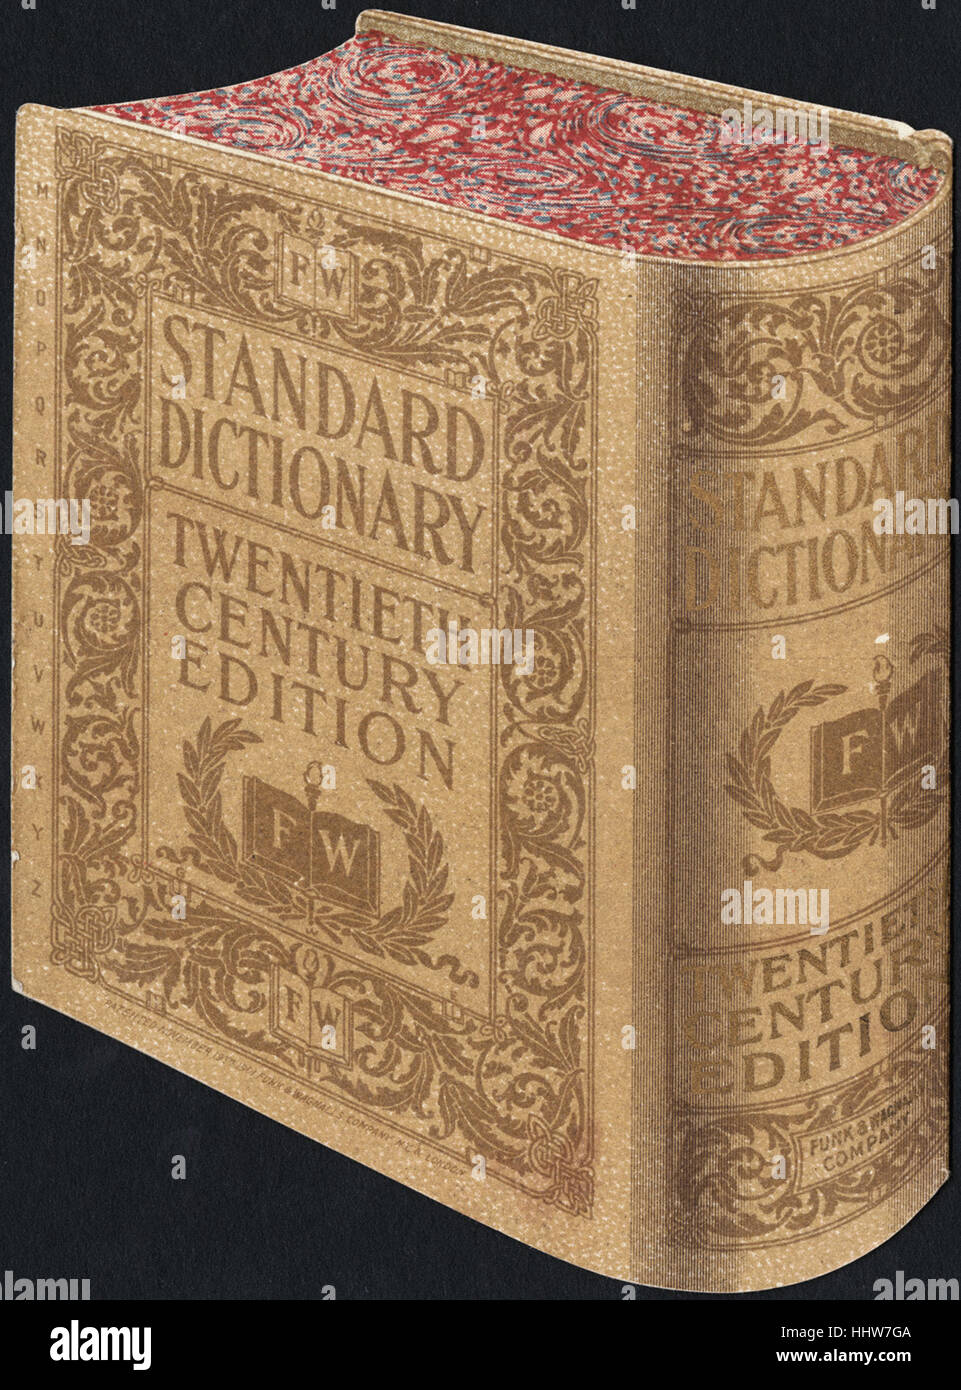 Dictionnaire Standard, édition du 20e siècle. [Retour] - loisirs, la lecture et les voyages les cartes commerciales Banque D'Images